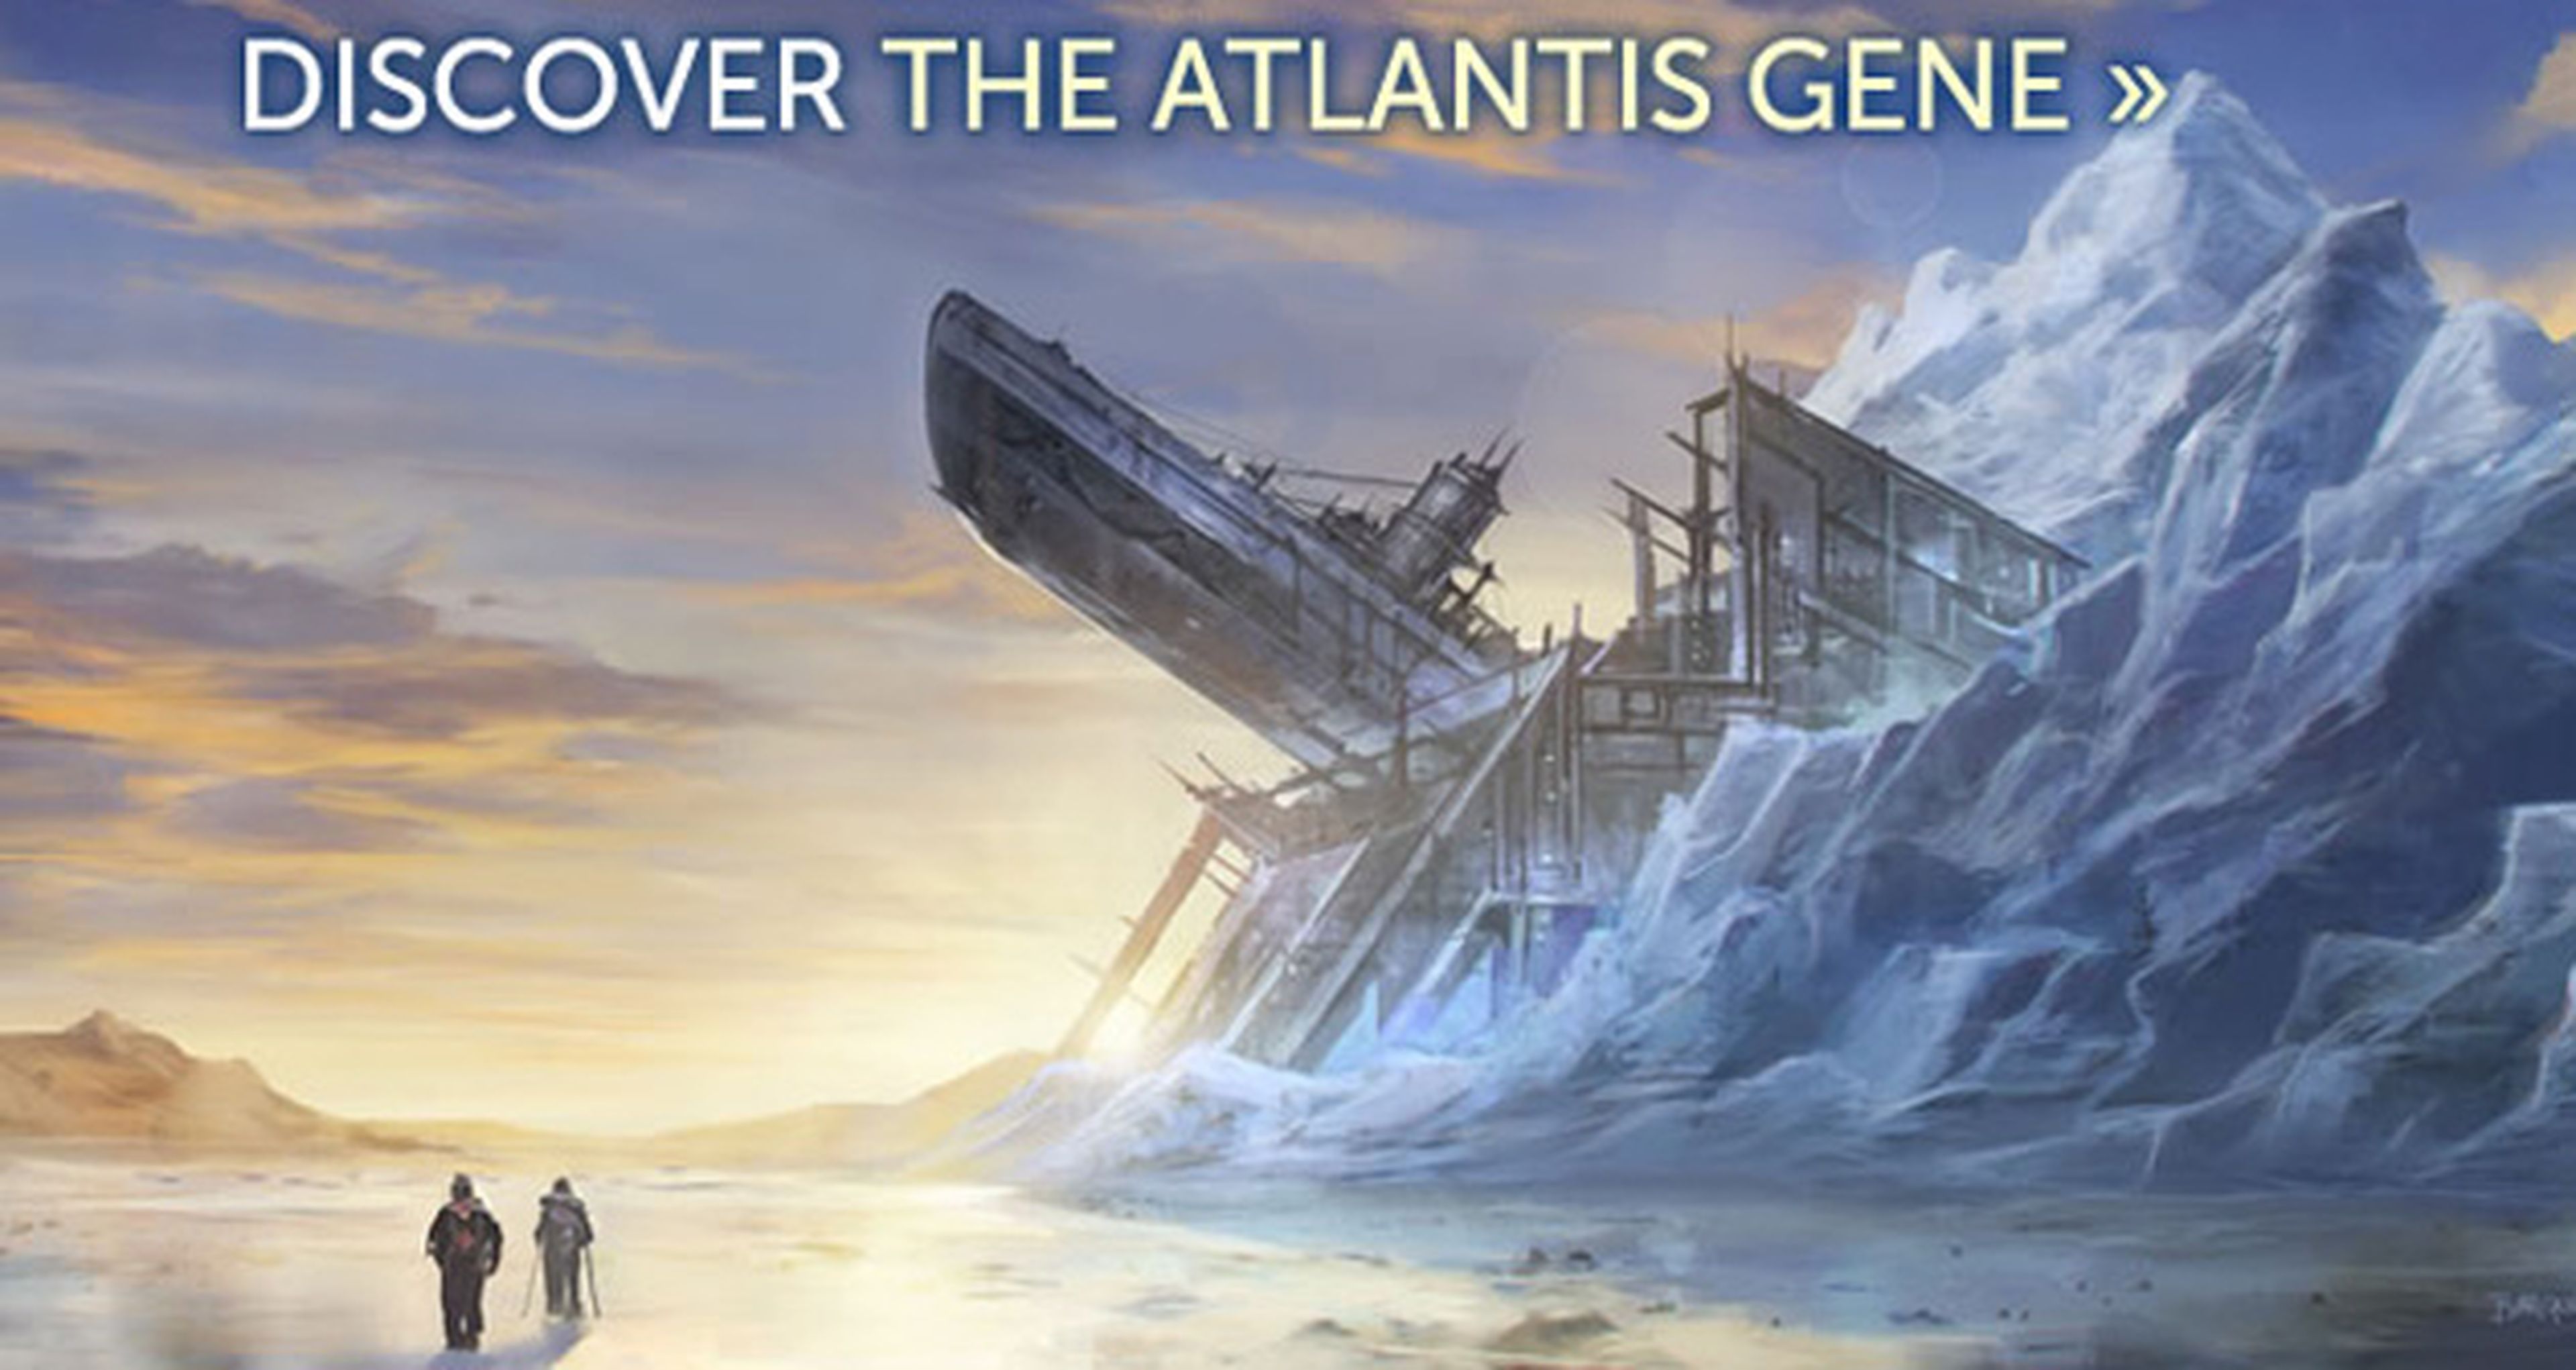 La saga de ciencia ficción Atlantis tendrá su adaptación cinematográfica